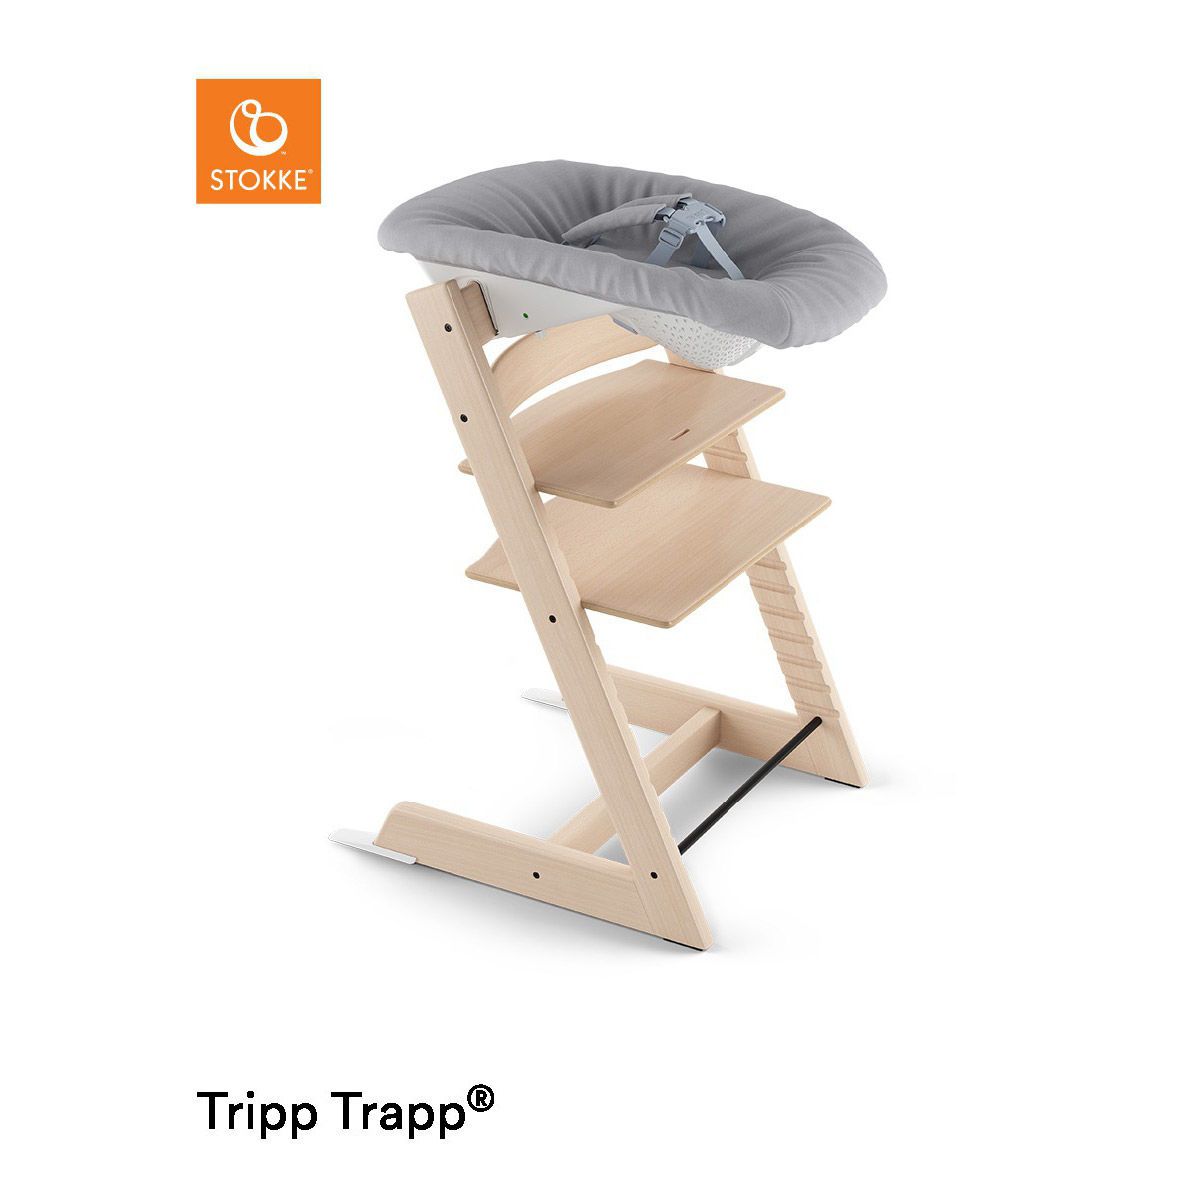 Ремни для стула stokke tripp trapp